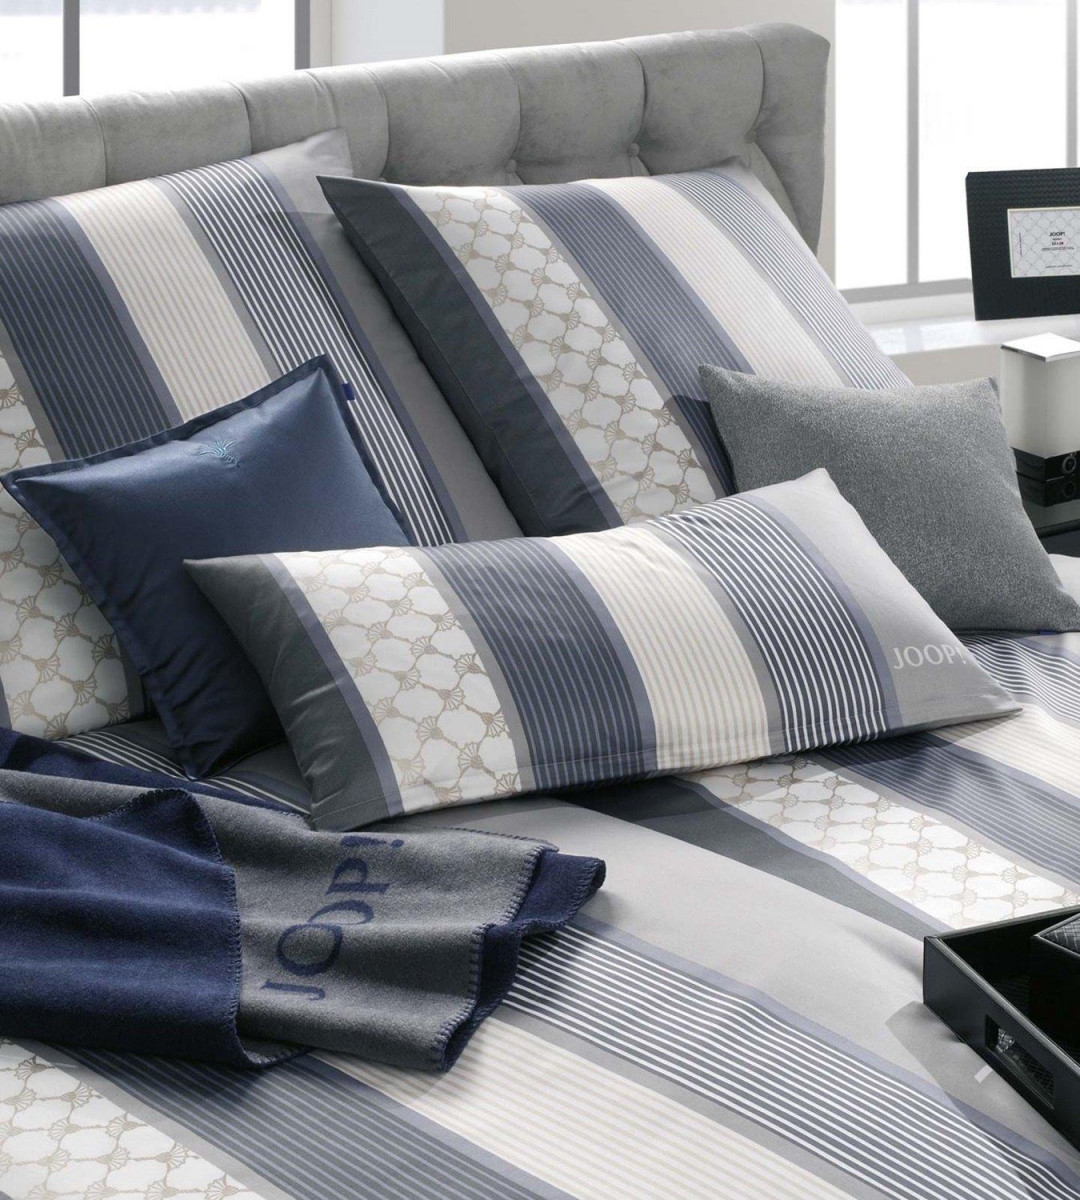 Luxusní ložní prádlo v originálním designu výrobce JOOP! Cornflower Stripes v šedo stříbrné deep coal barvě